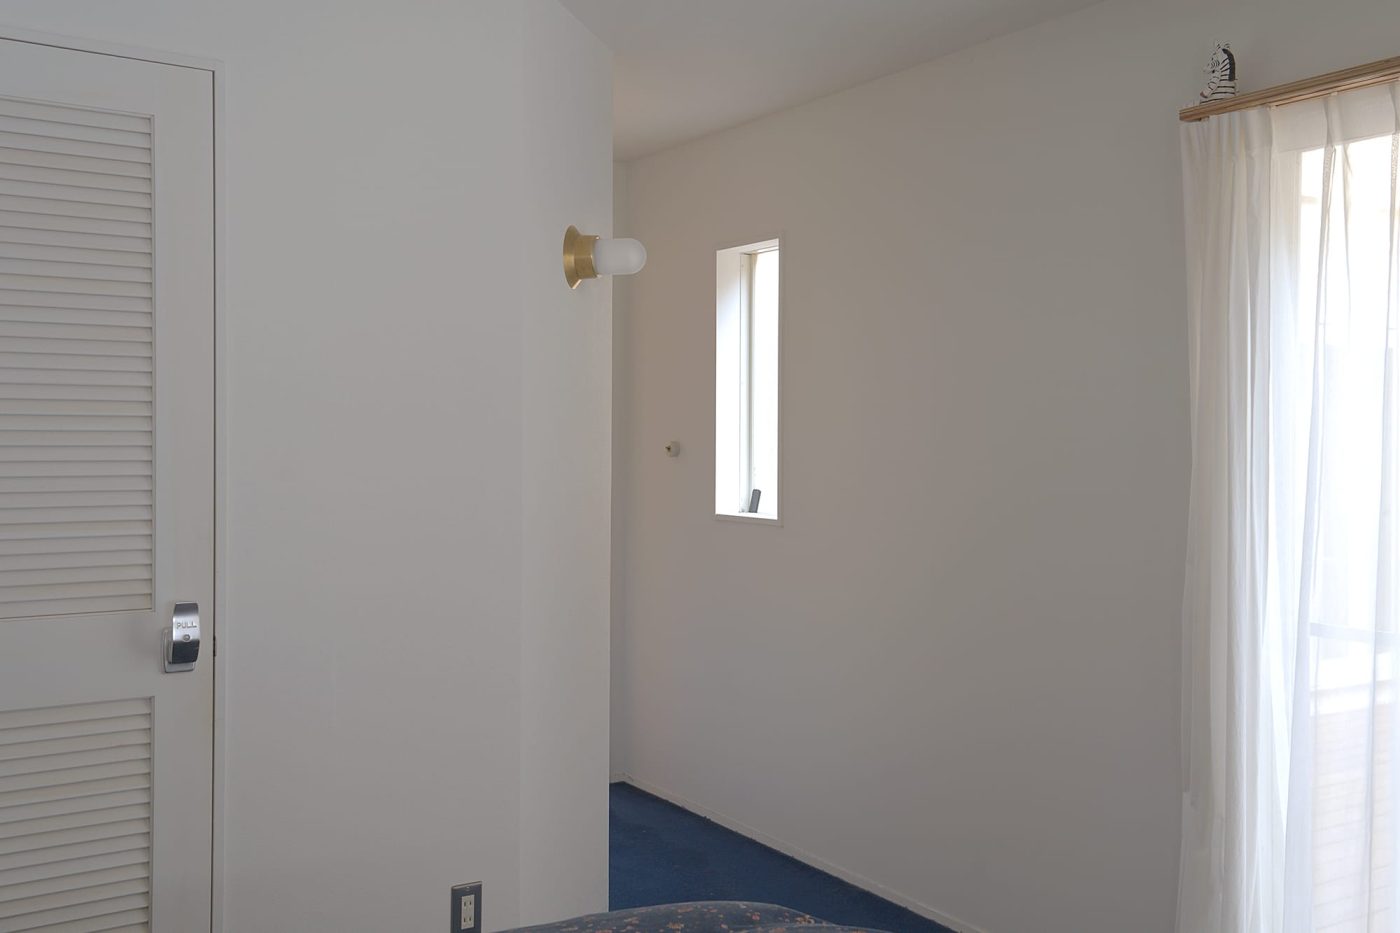 寝室から廊下へと続く空間を照らす照明として。ブルーのカーペットと真鍮は好相性。
